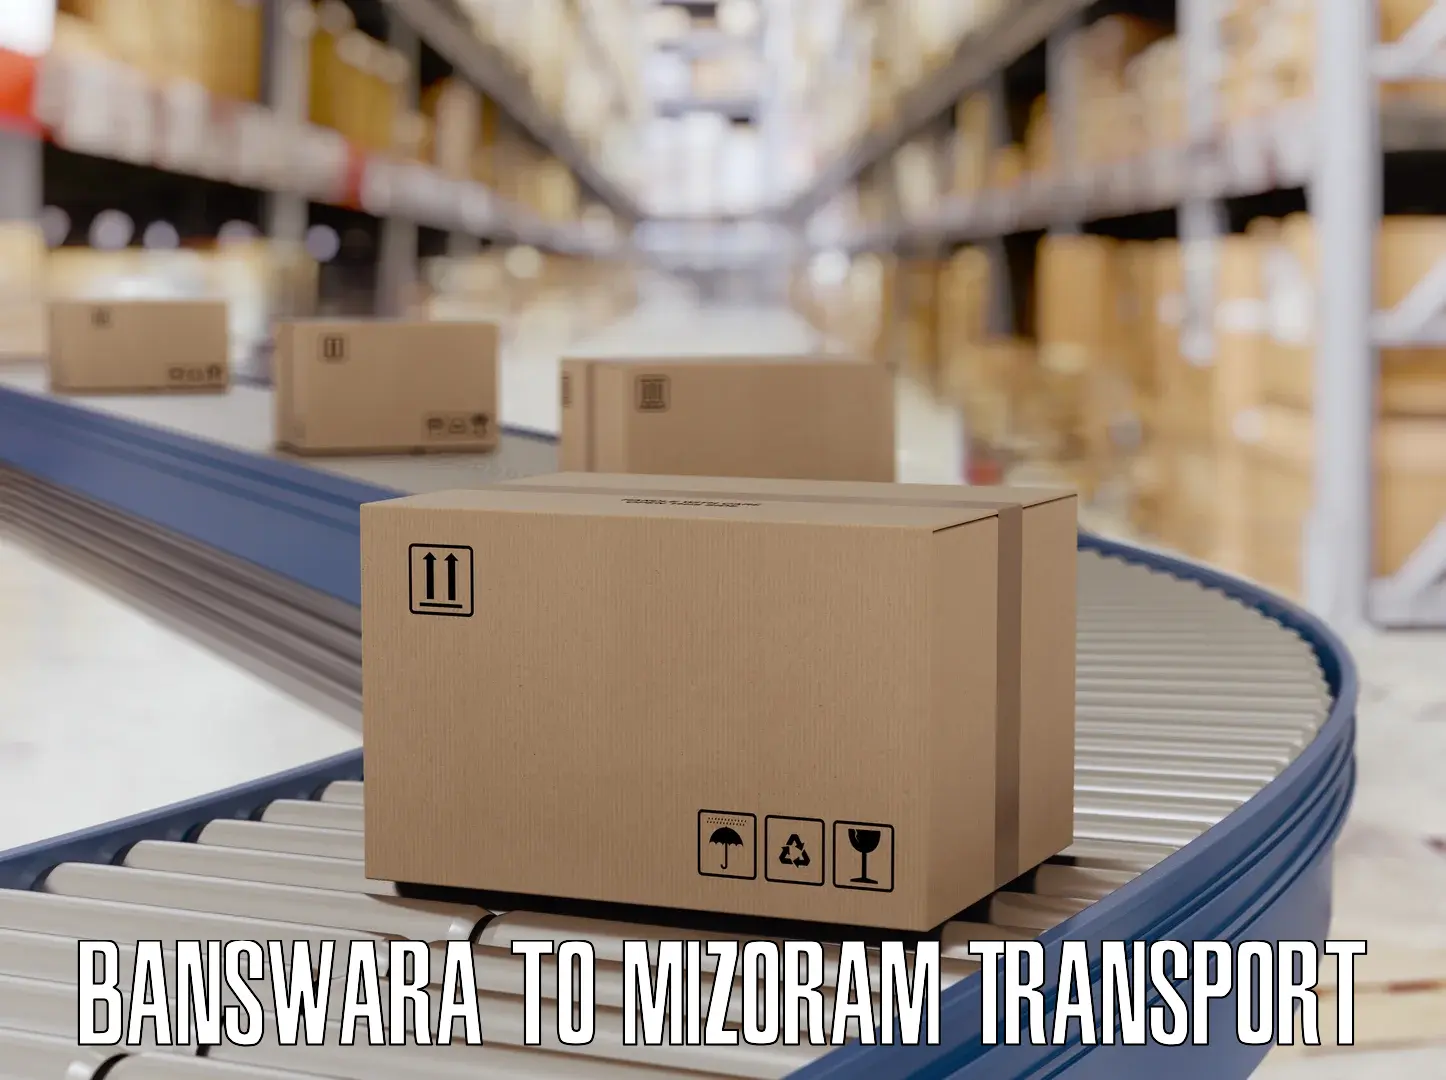 Lorry transport service in Banswara to Mizoram